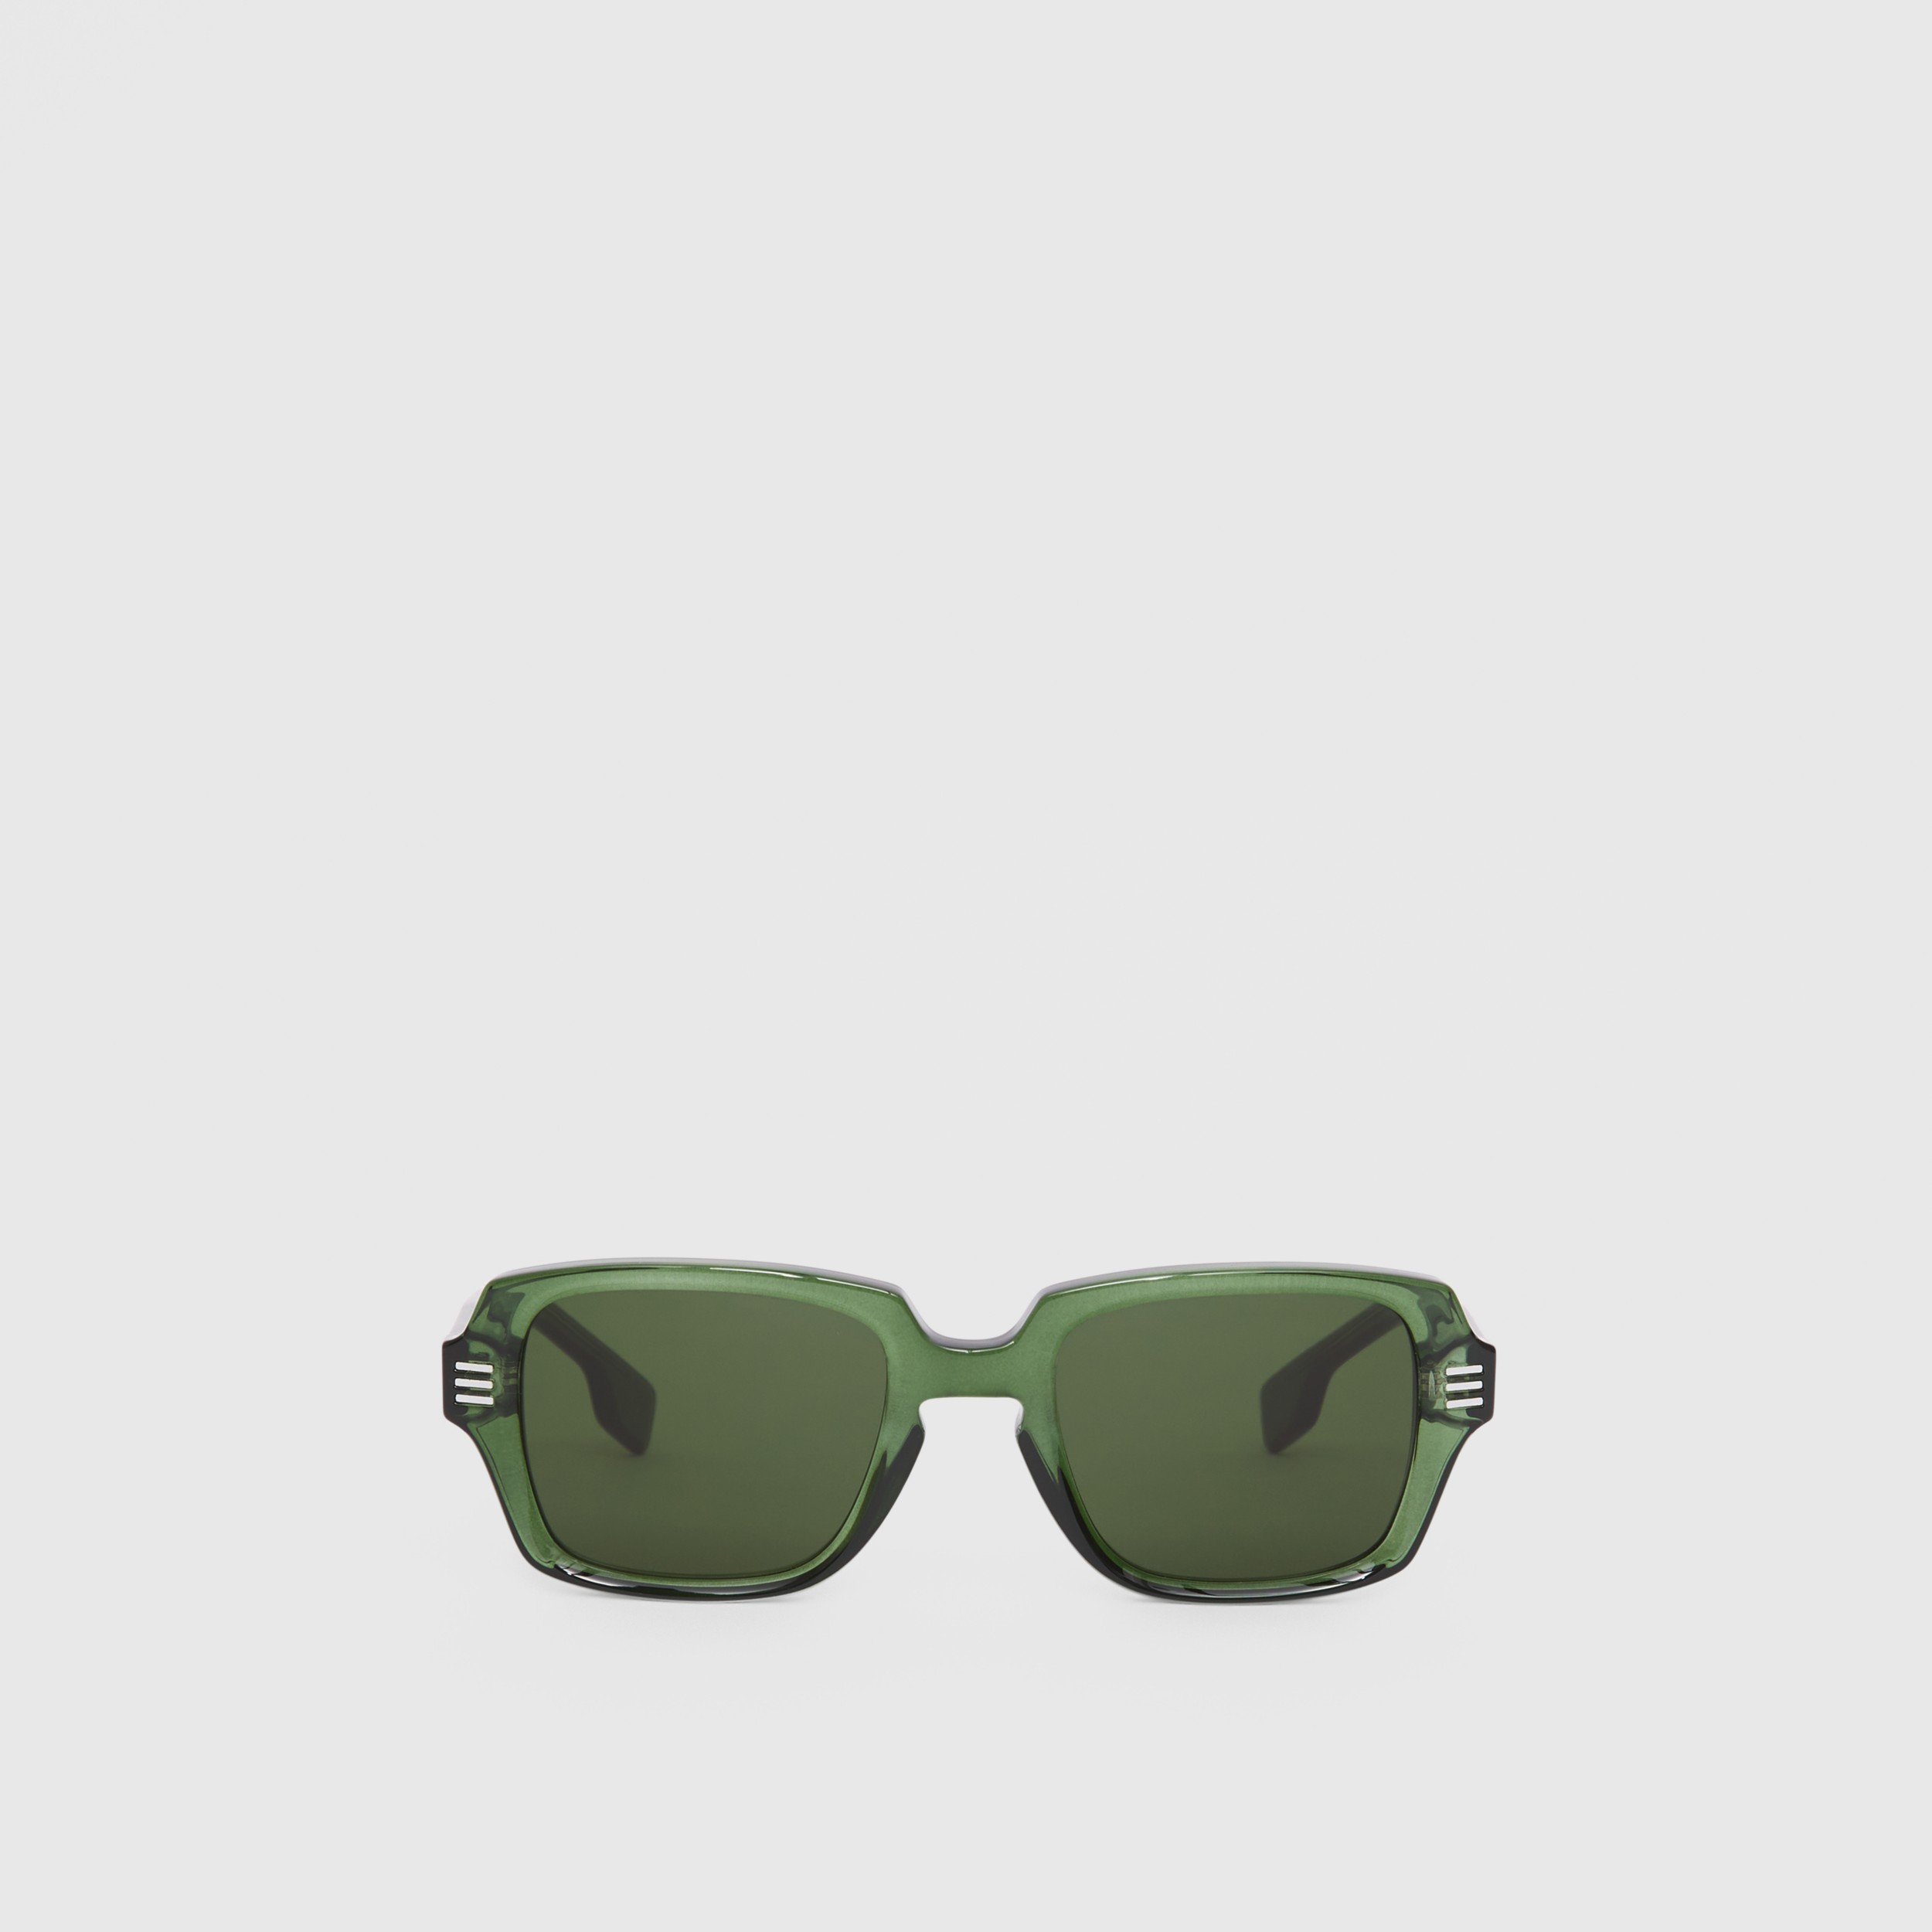 Top 81+ imagen burberry sunglasses green